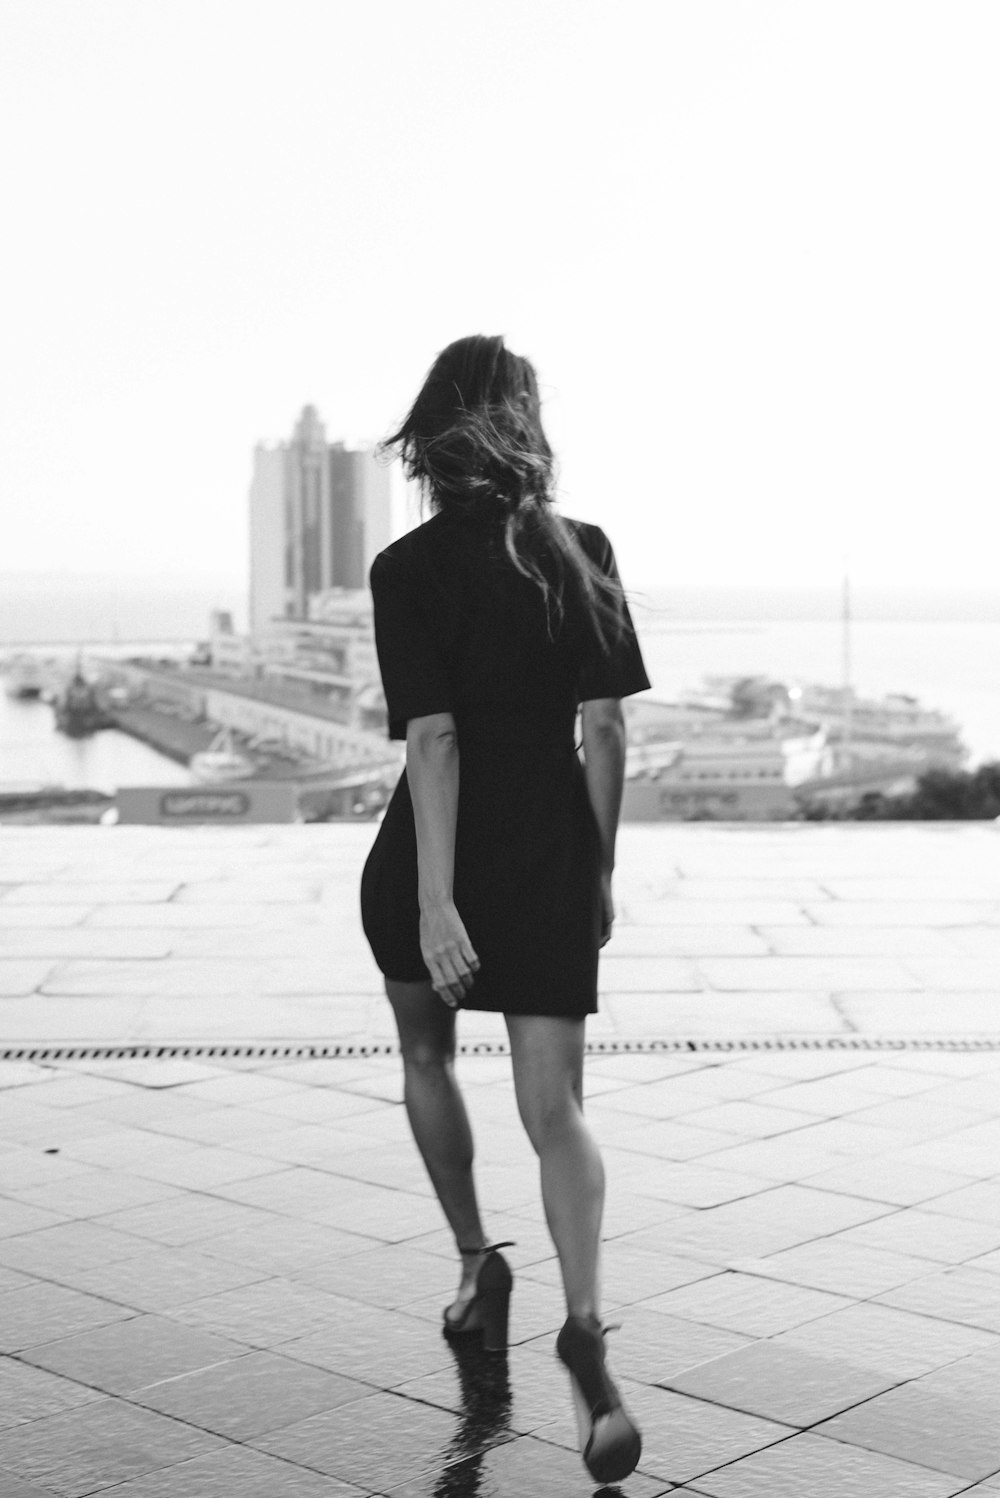 Frau in schwarzem Kleid, die tagsüber auf dem Bürgersteig spazieren geht